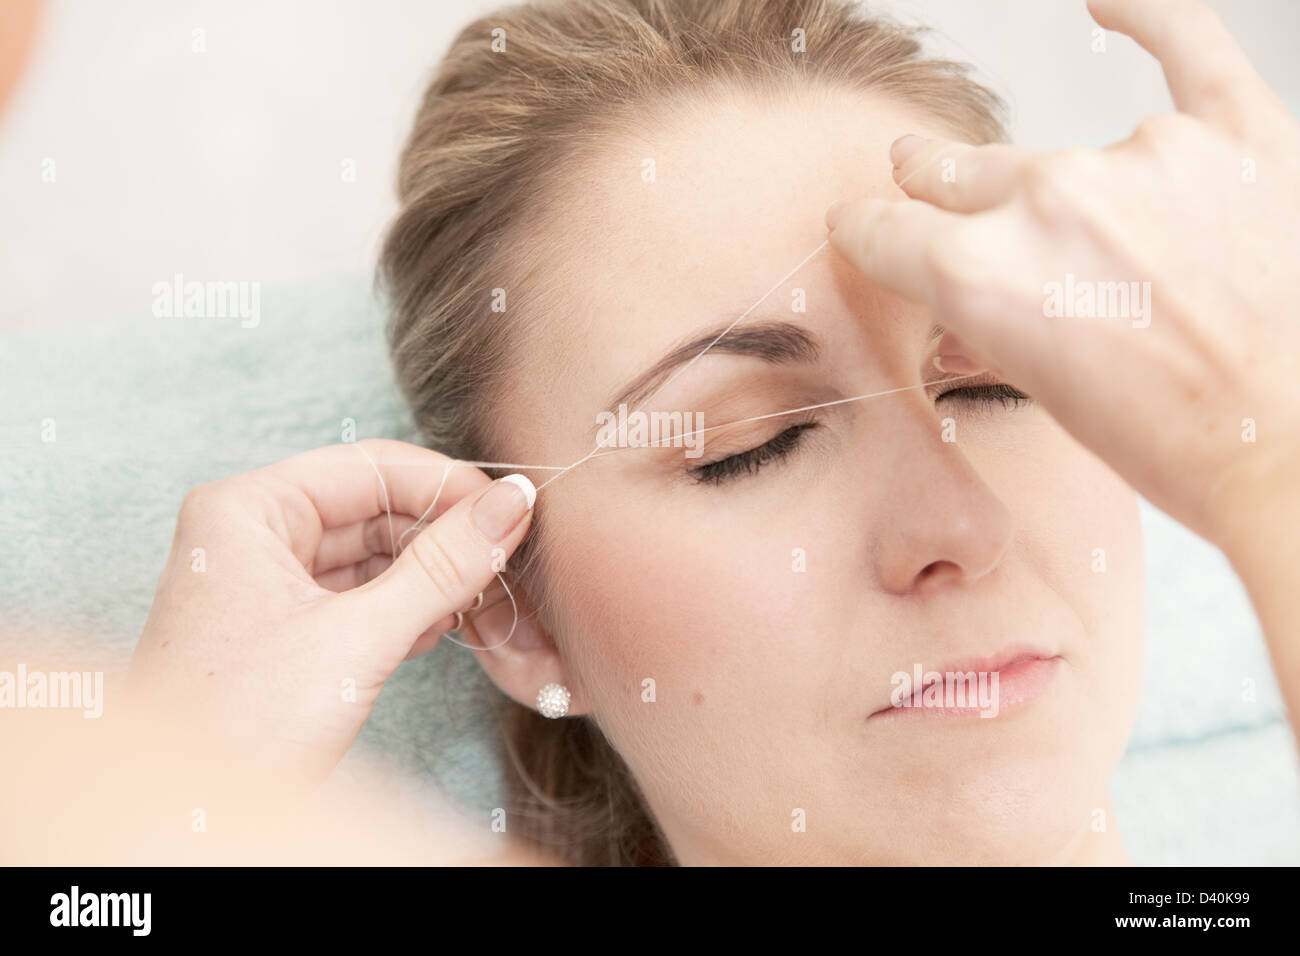 Mujer joven con sus cejas roscados, para eliminar el pelo no deseado. Esta técnica permite la conformación precisa relativamente sin dolor Foto de stock